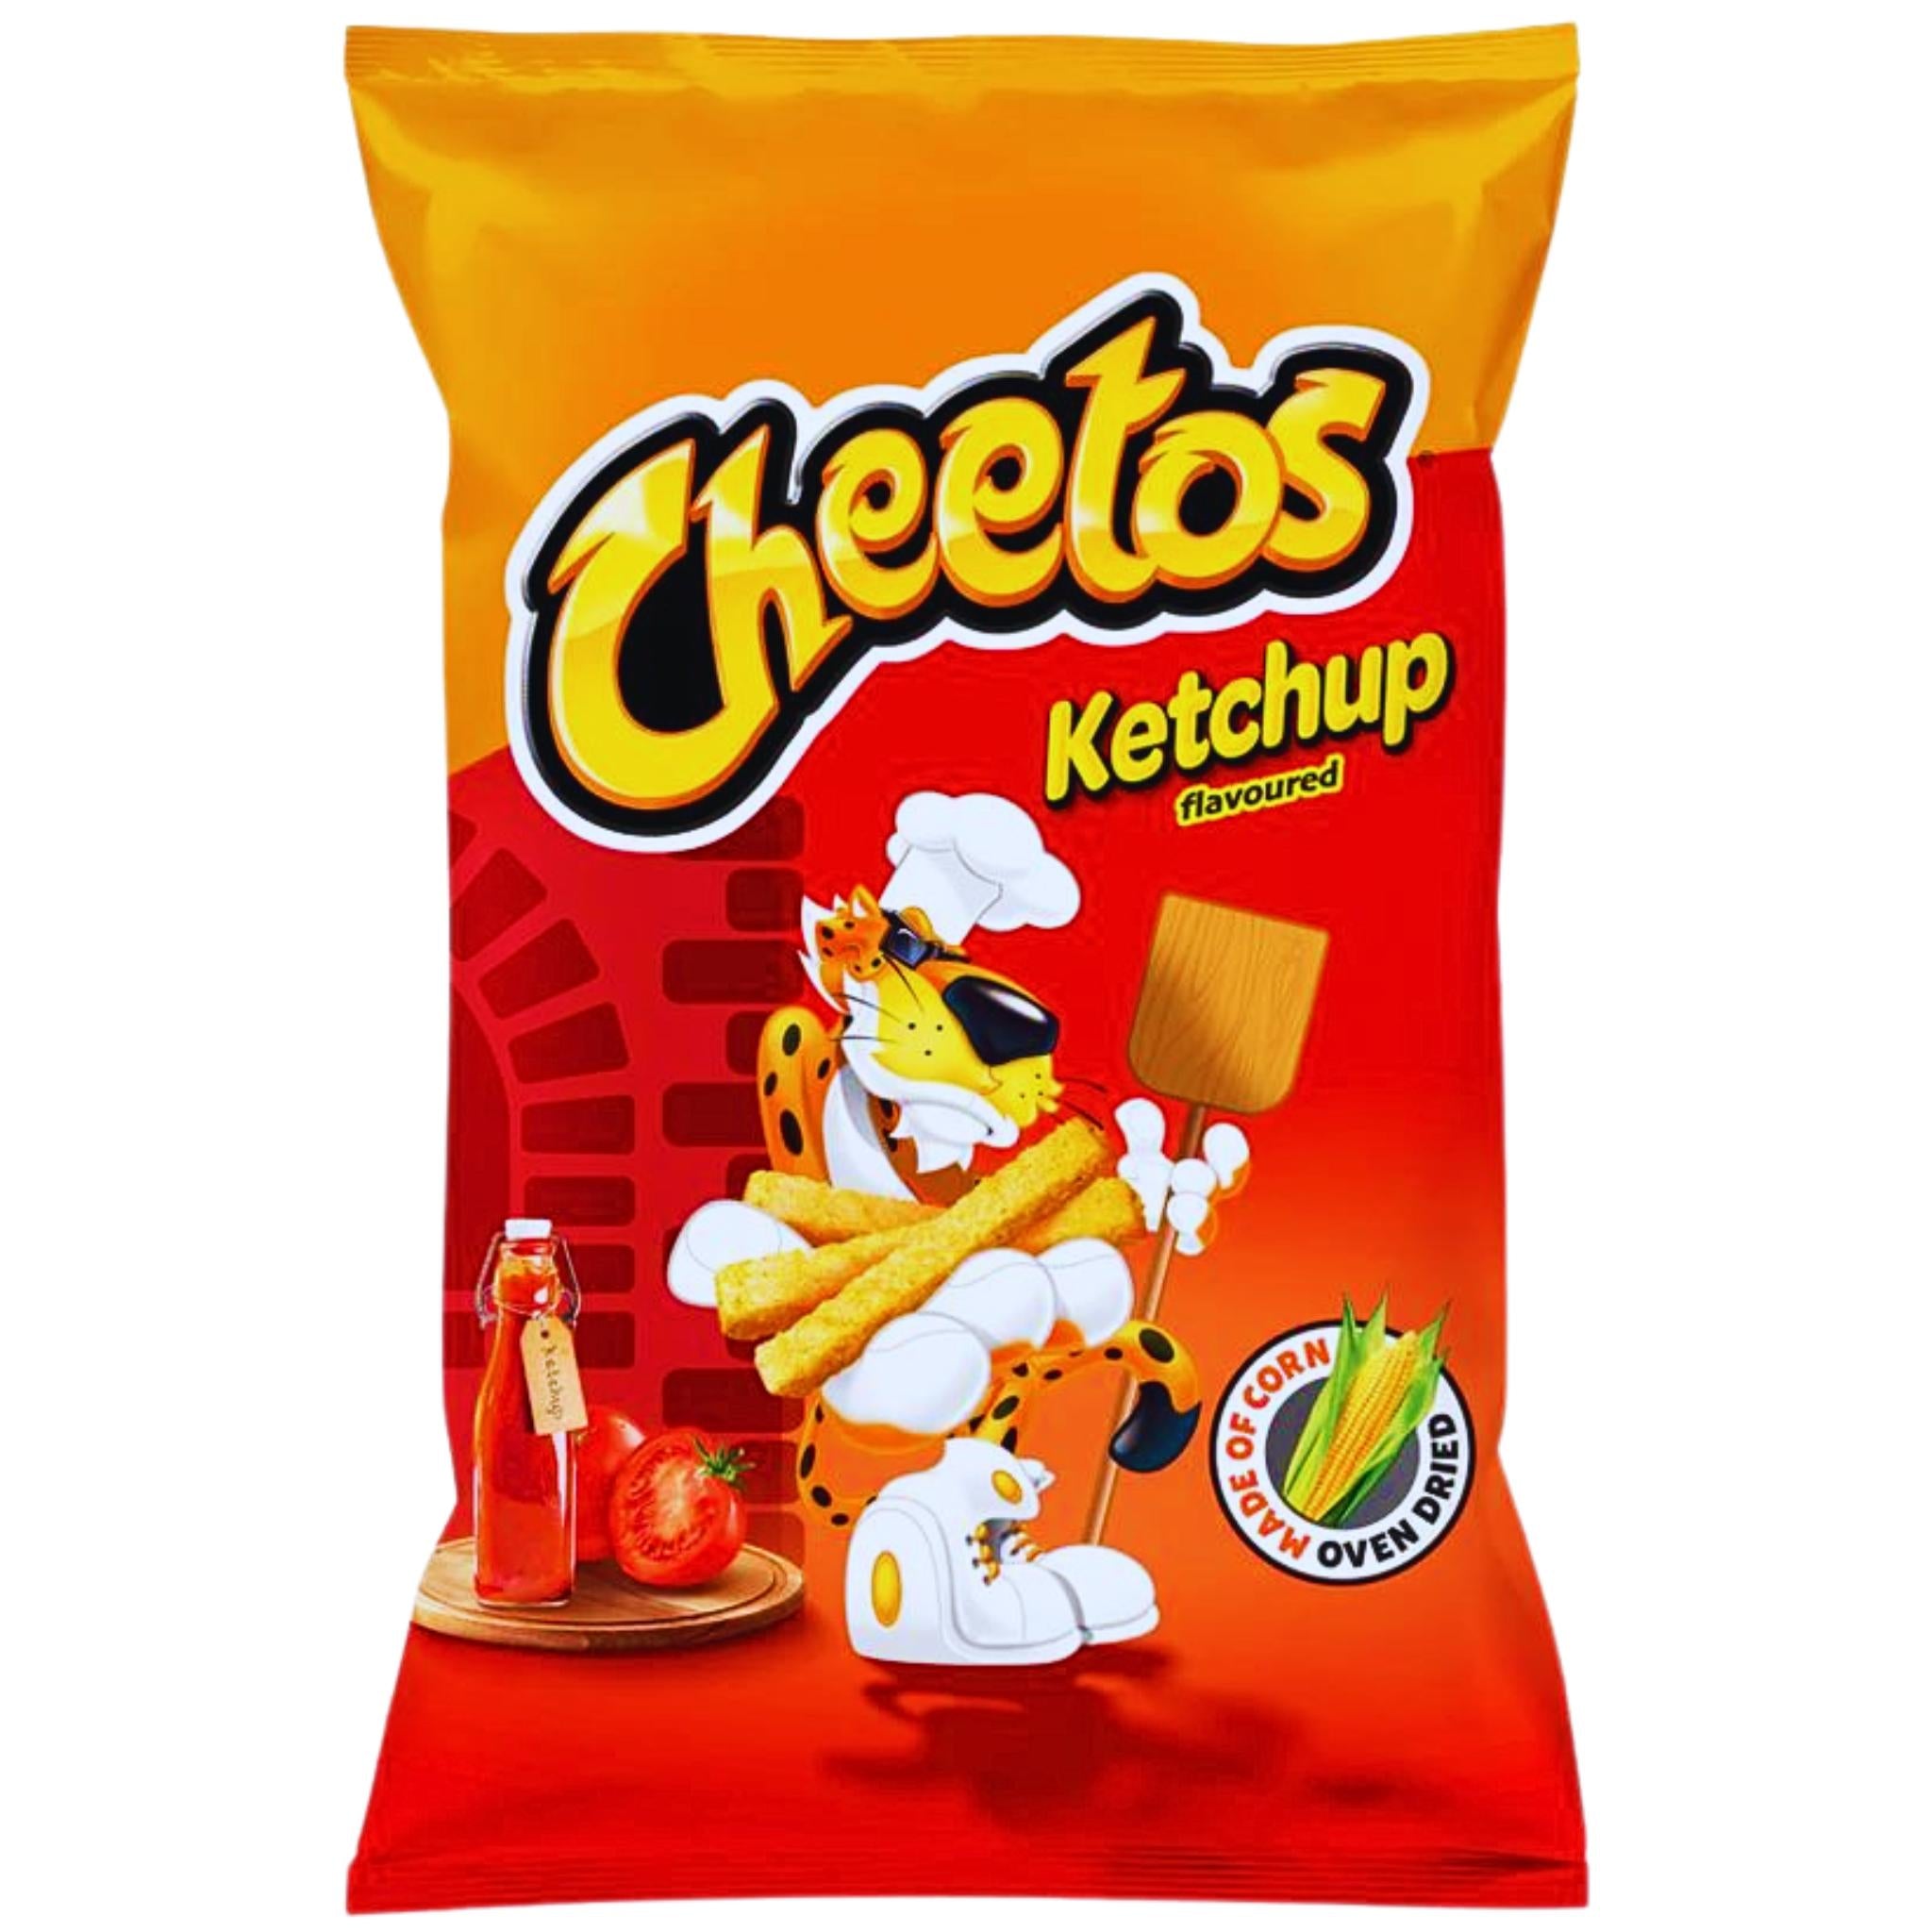 Cheetos Ketchup - 85g (POOLS)